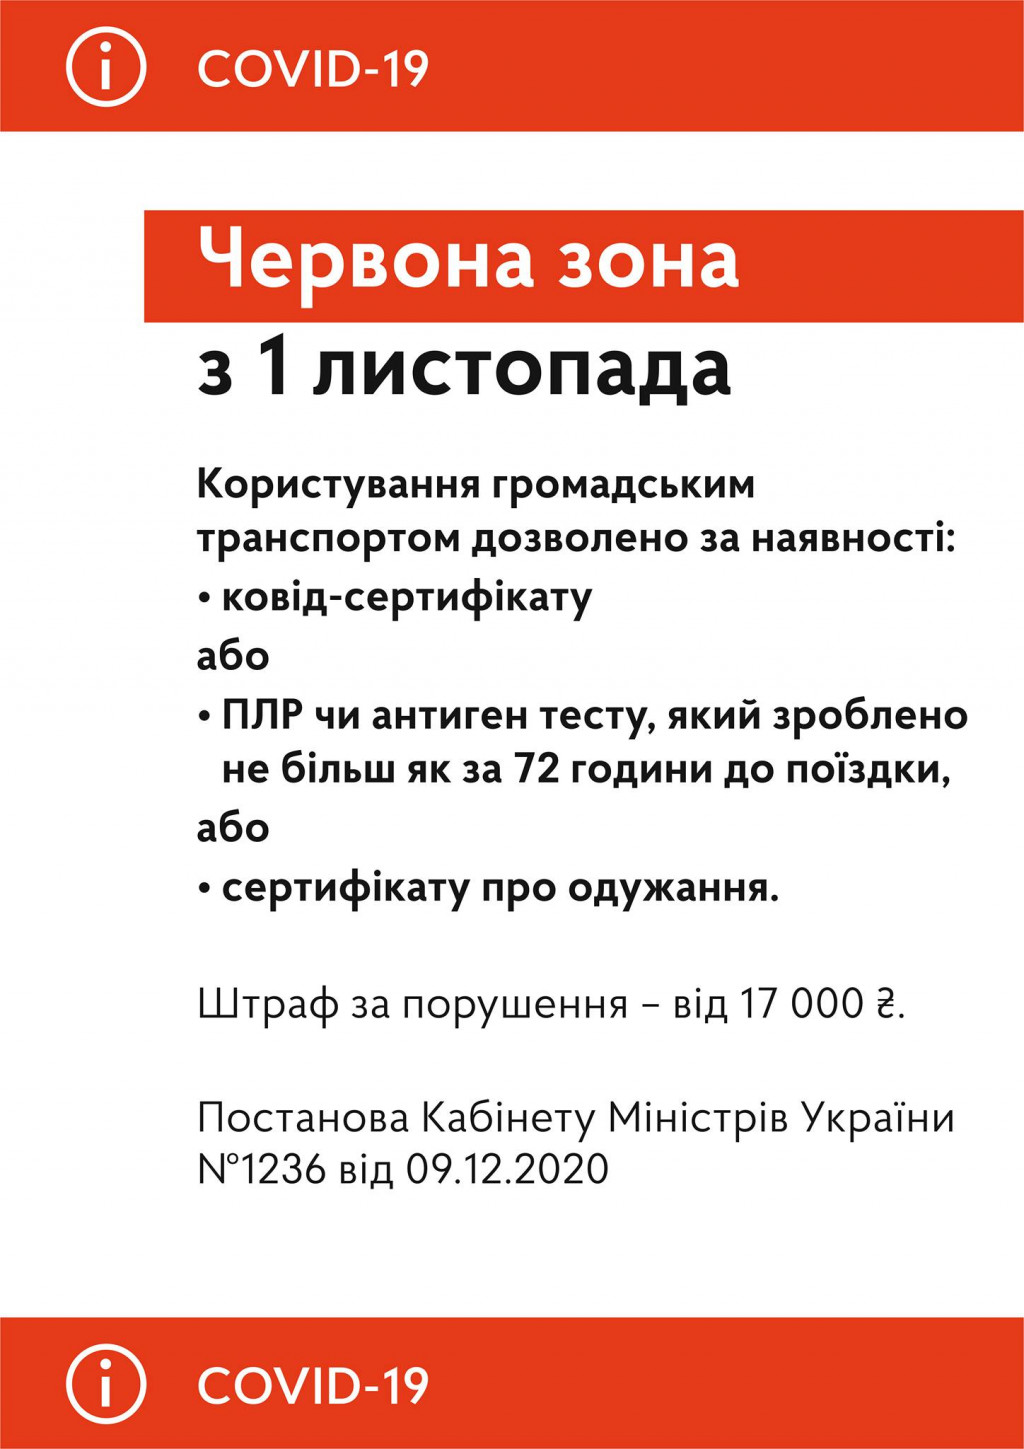 С сегодняшнего дня в Киеве могут оштрафовать на 17 тысяч гривен за проезд в общественном транспорте без ковид-сертификата